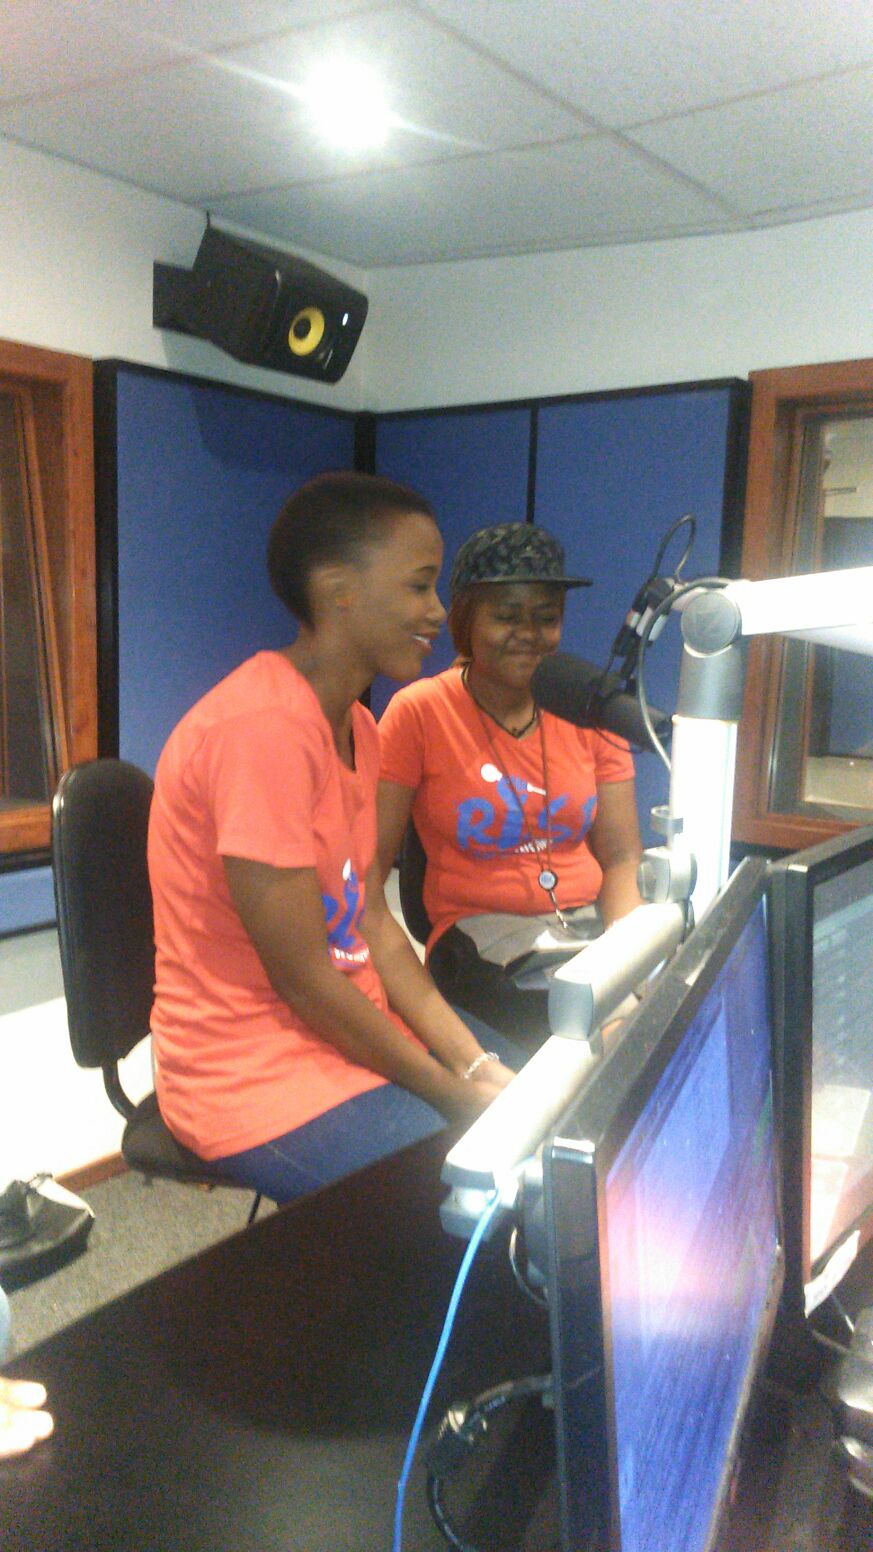 2 RYWC members on air   talking GBV